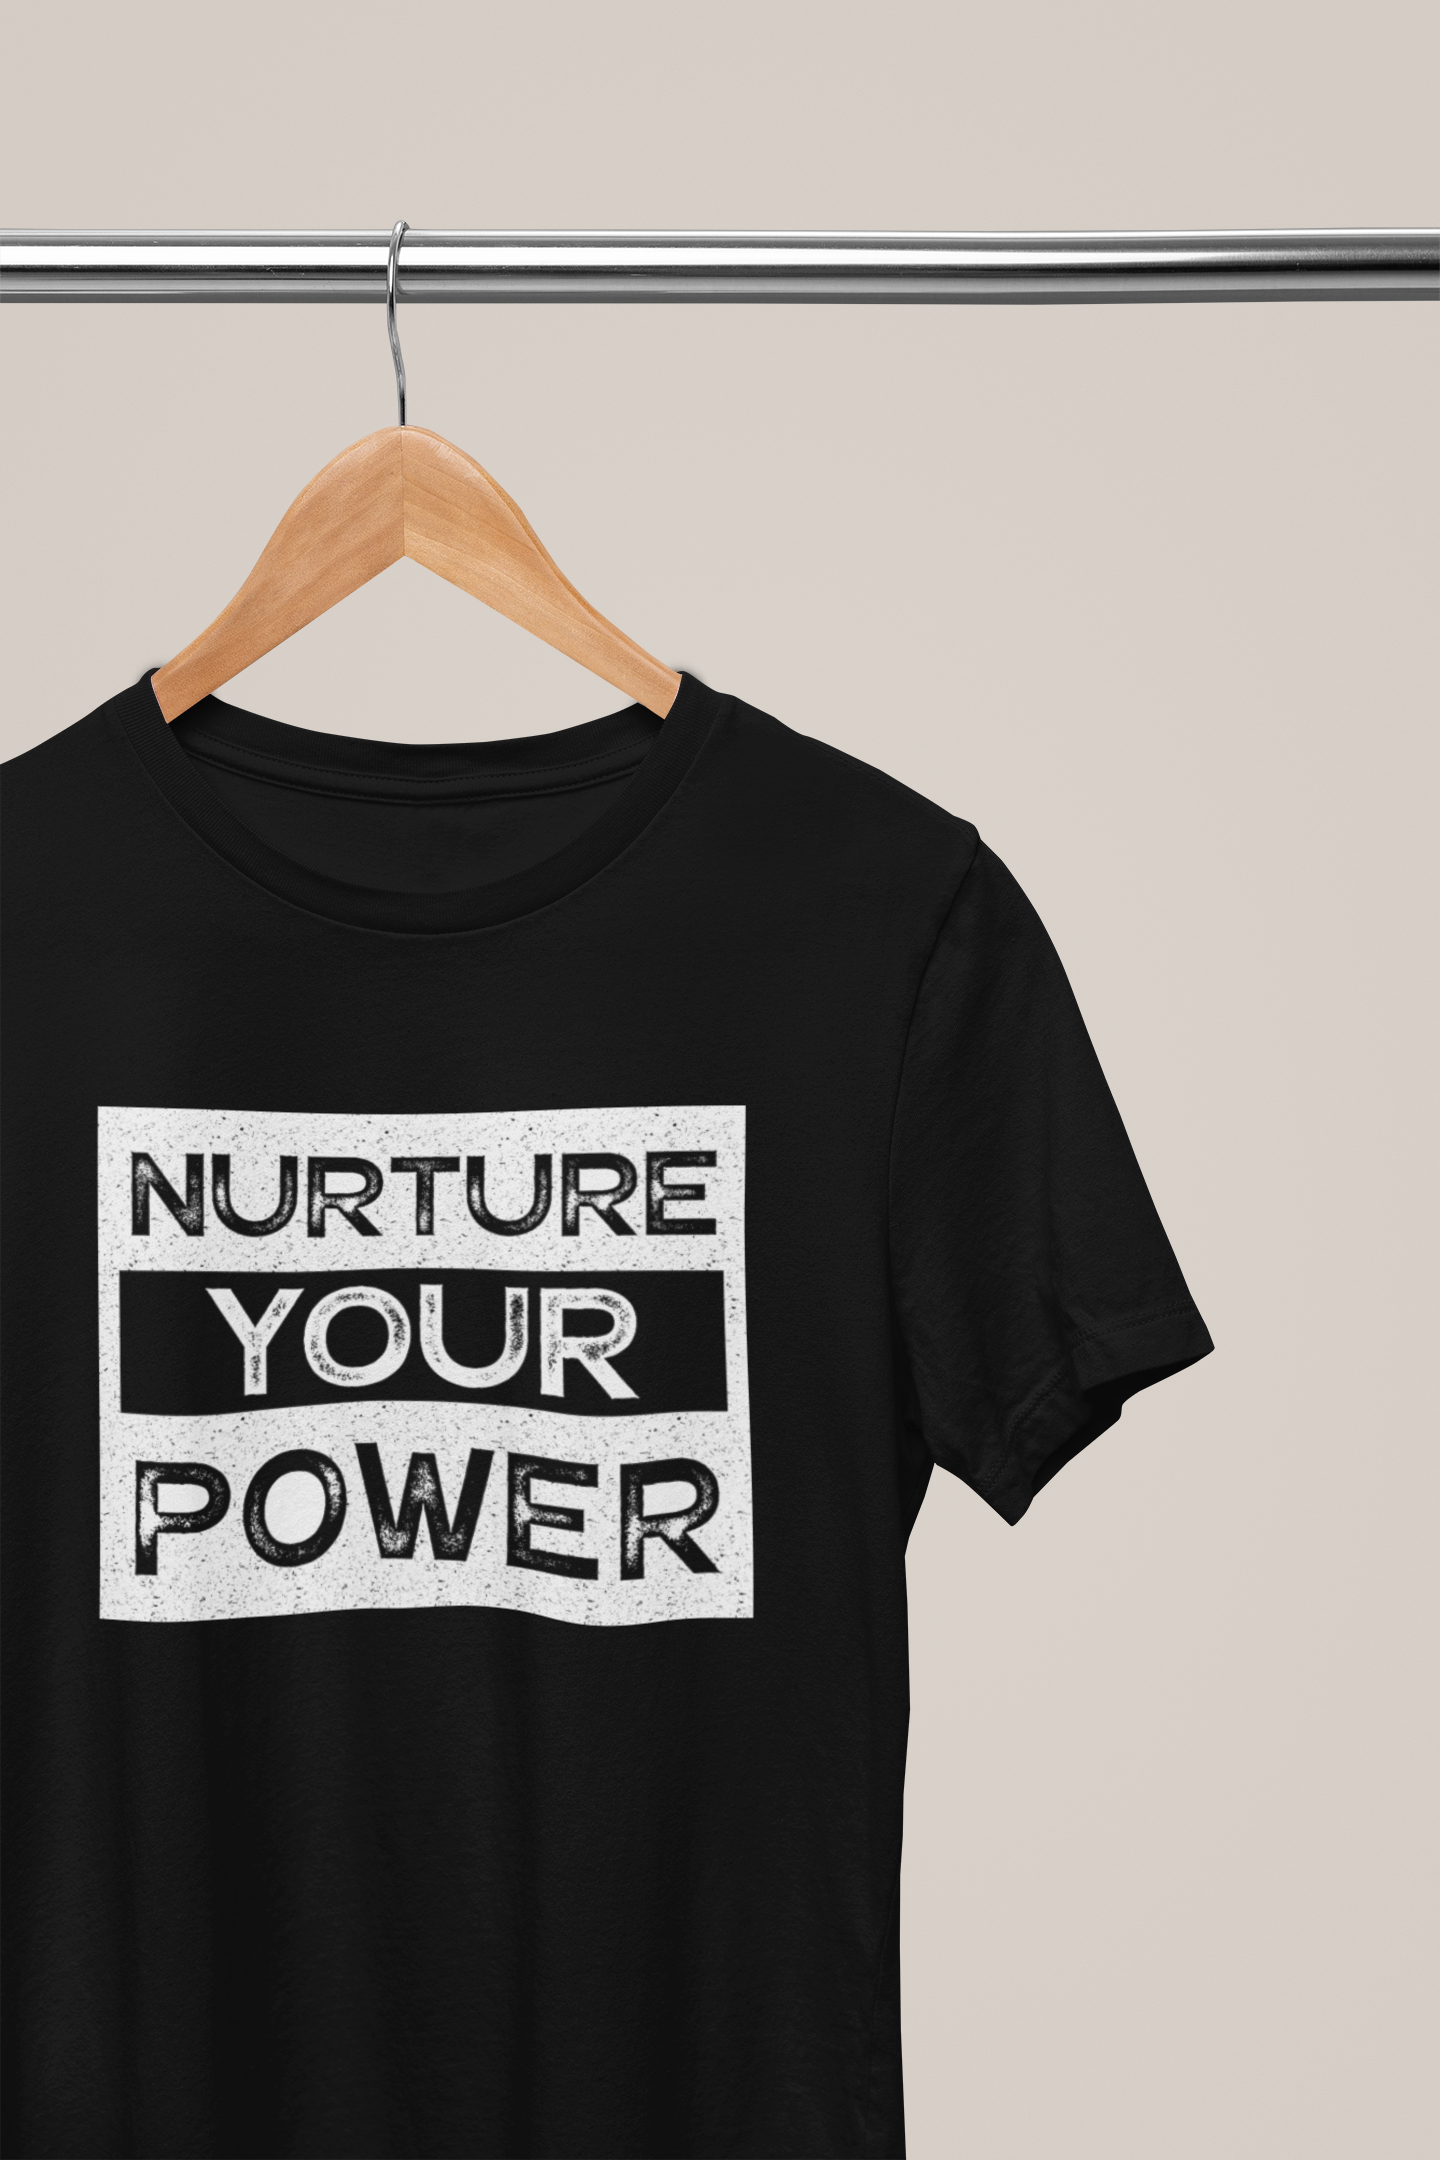 Nurture Your Power, Hoodies, Sweatshirts, Tees, and Mugs